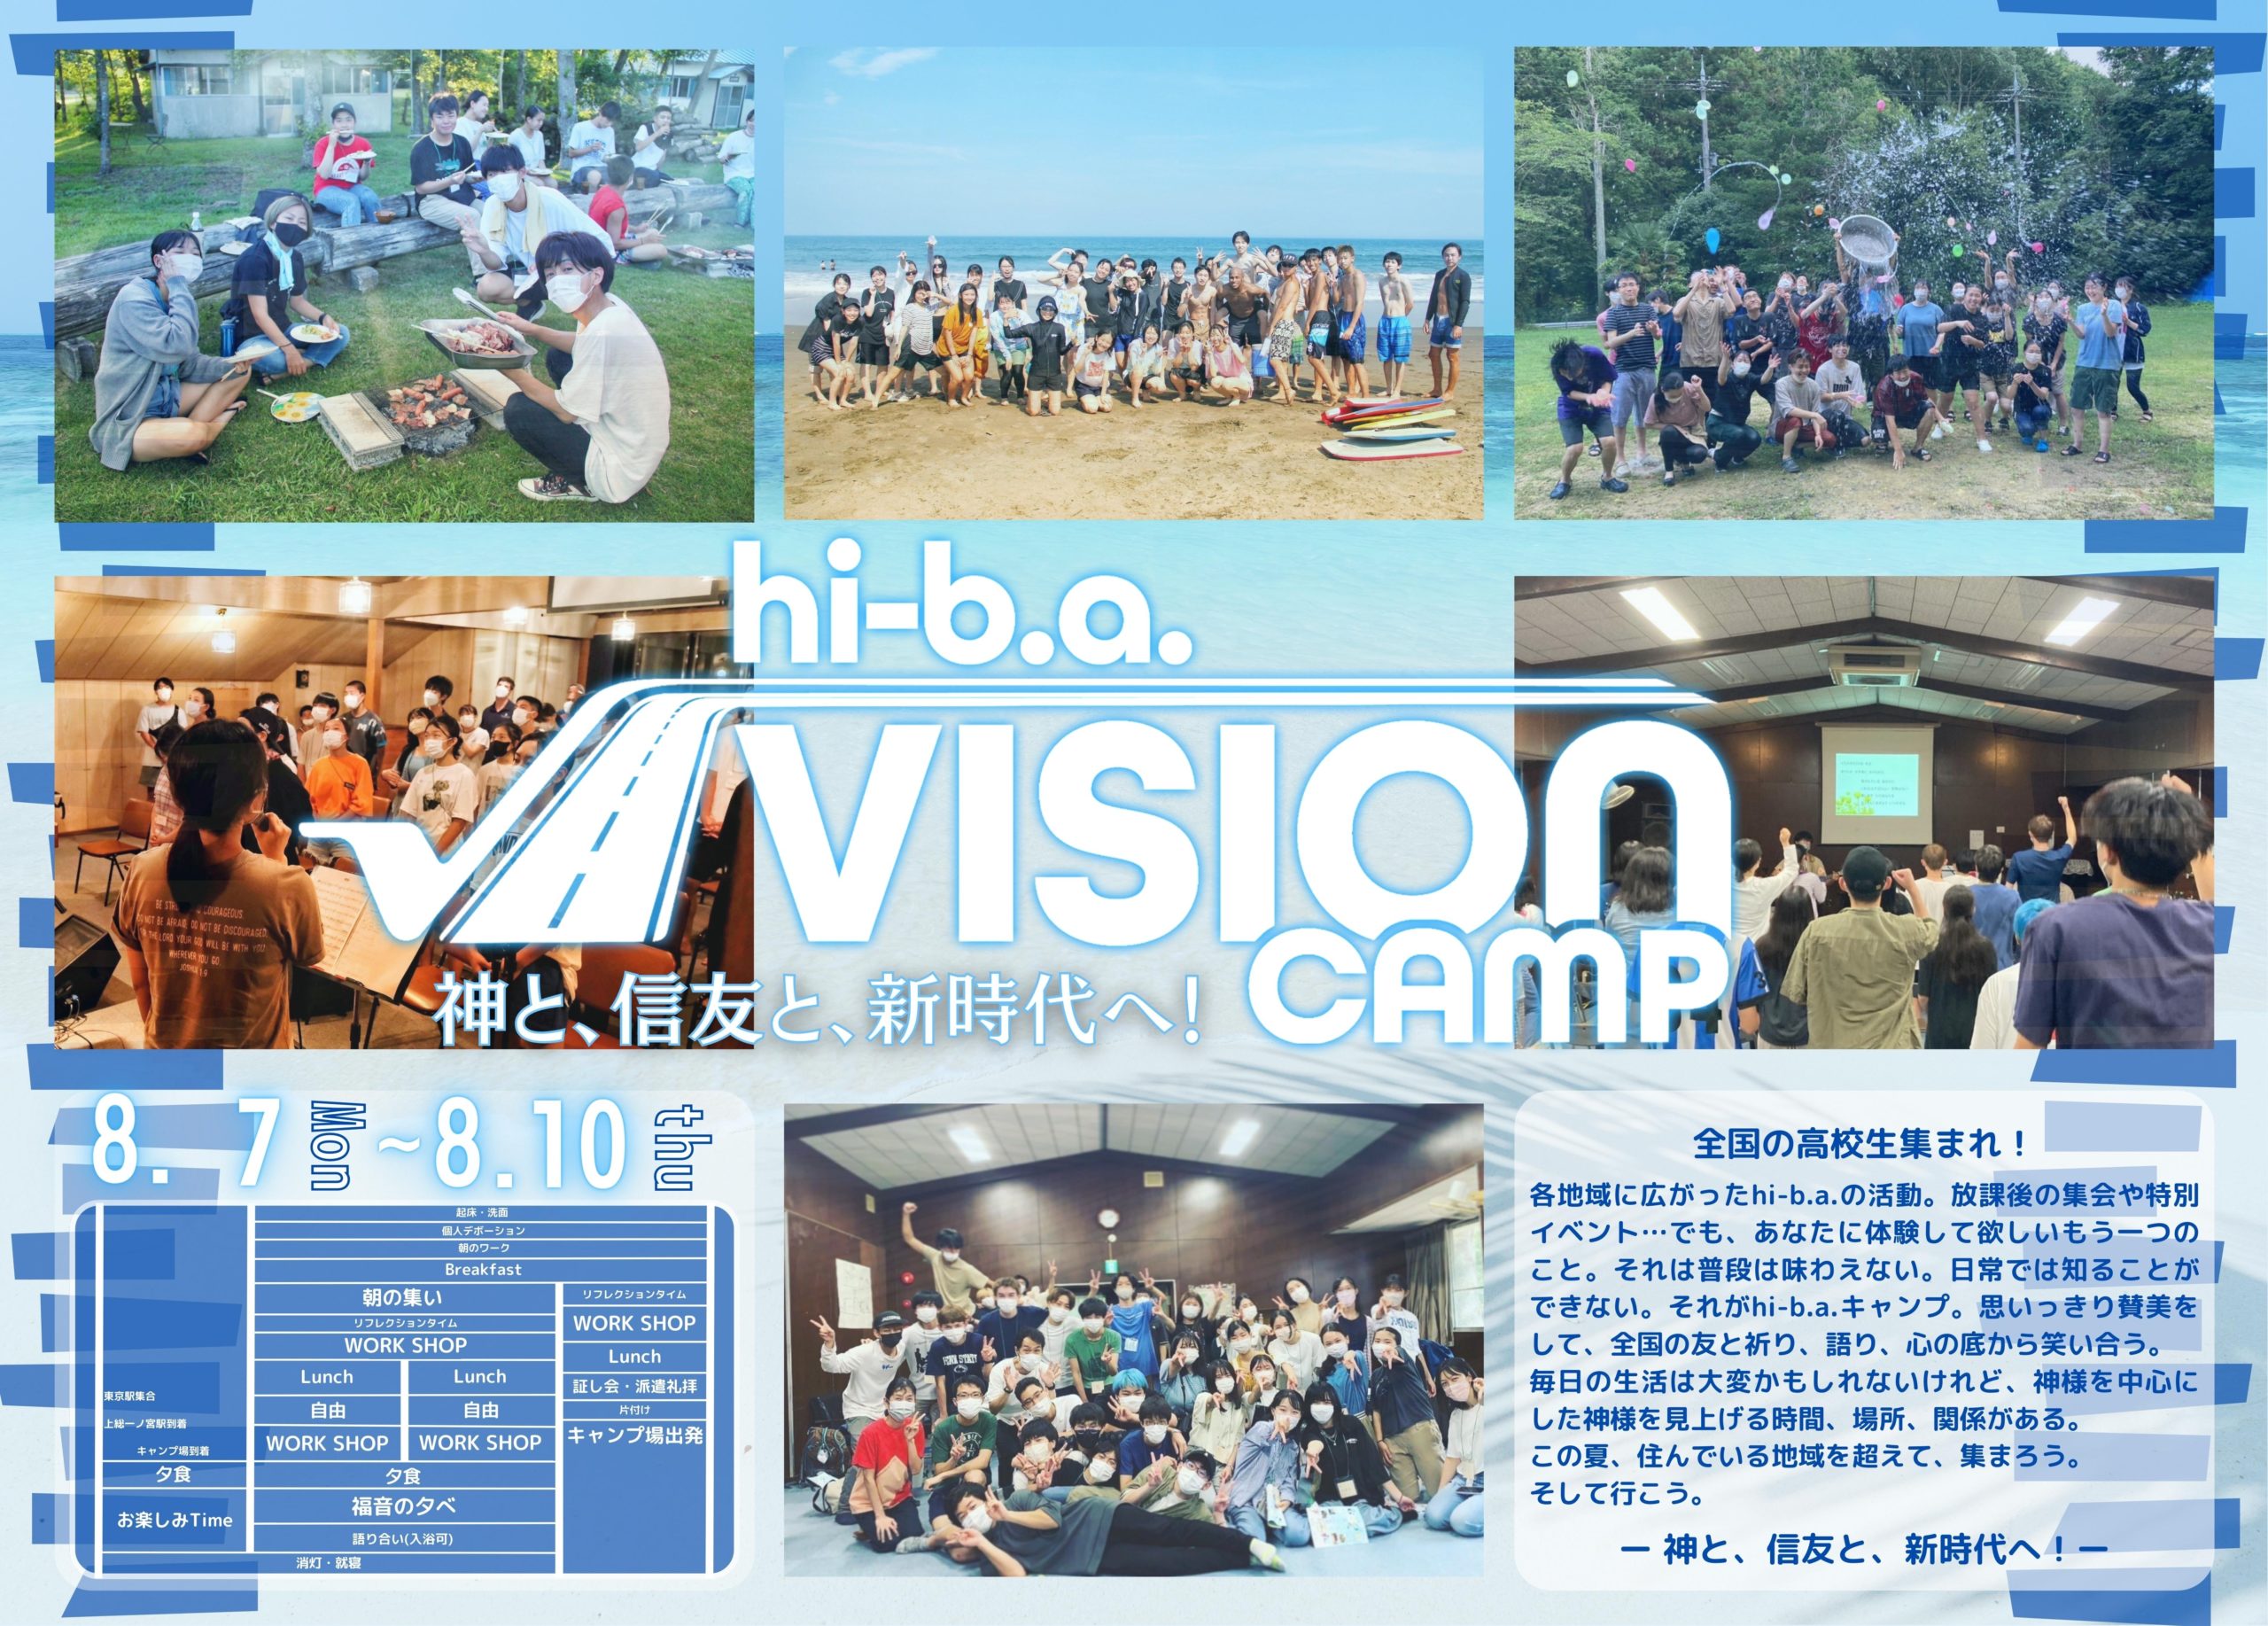 hi-b.a. √vision camp